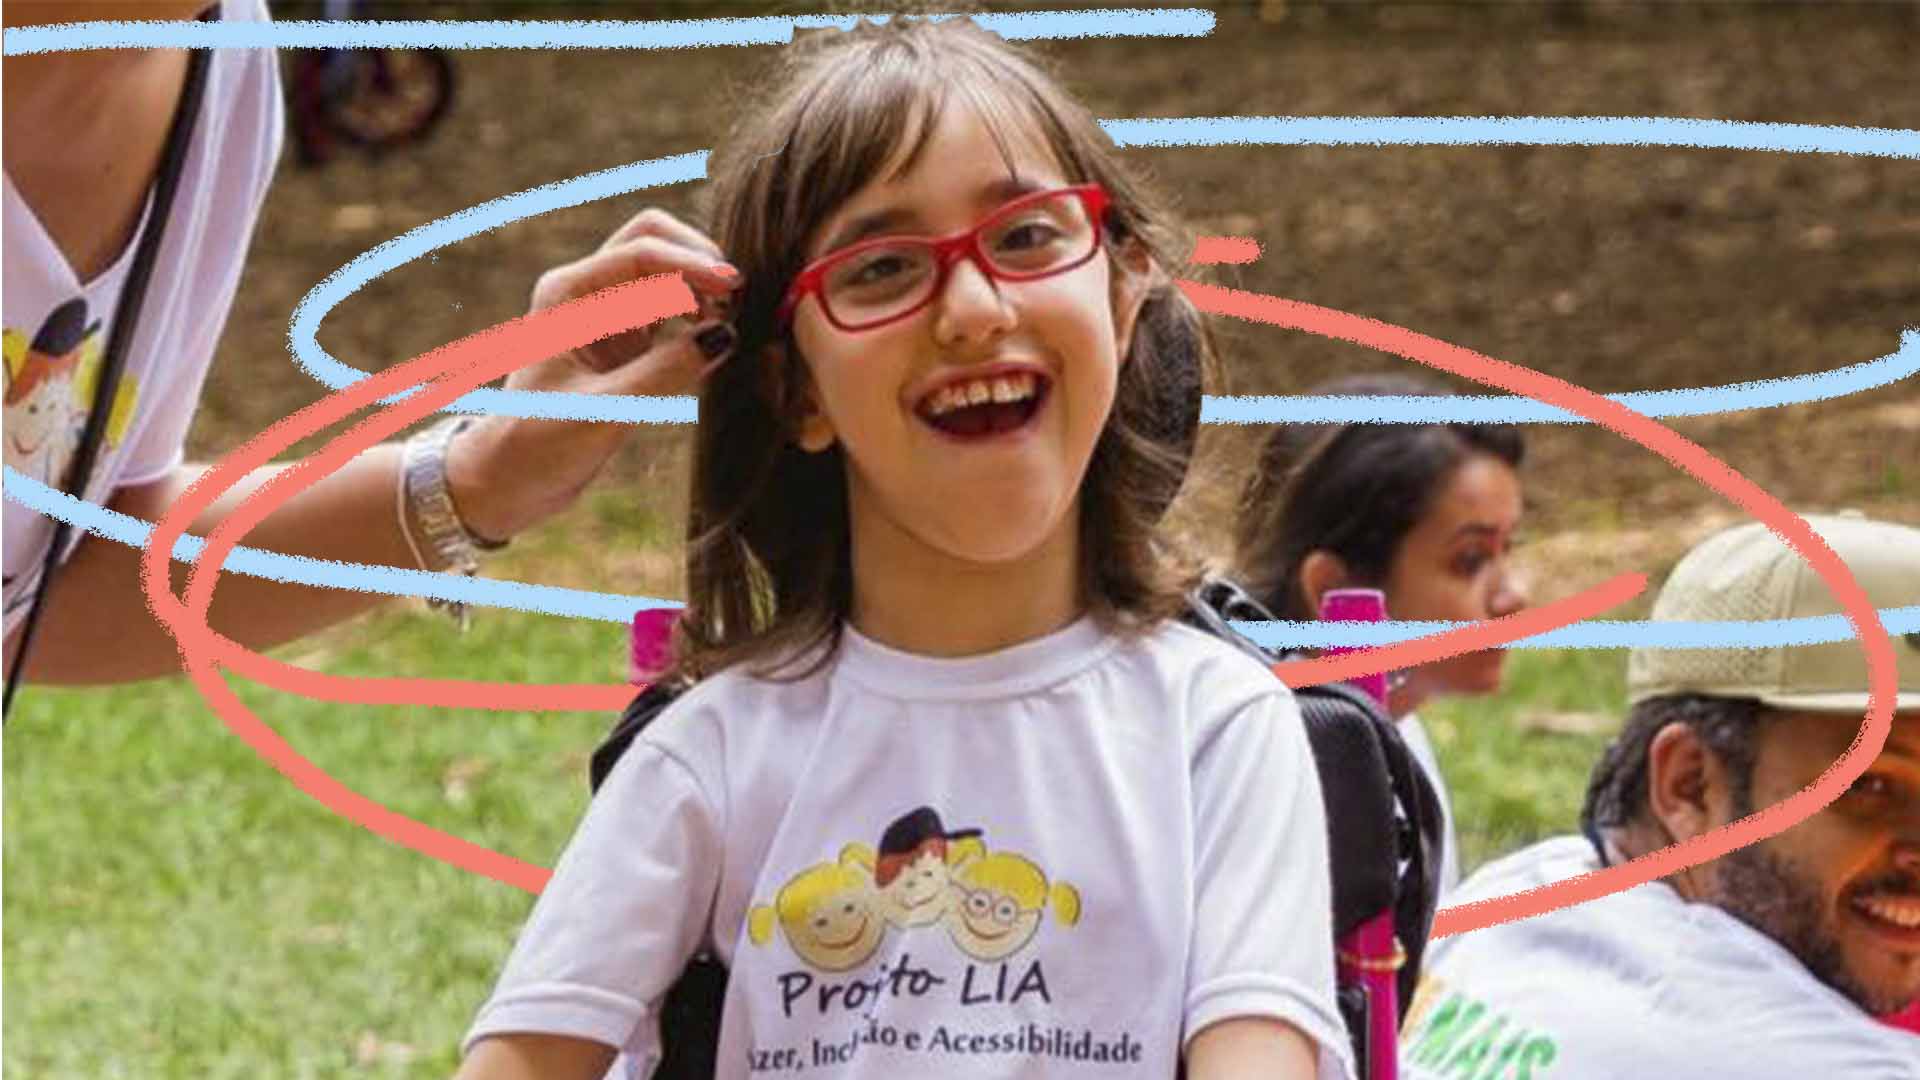 Imagem de uma criança com paralisia cerebral. Ela está em uma cadeira de rodas sorrindo com uma camiseta do projeto Lia